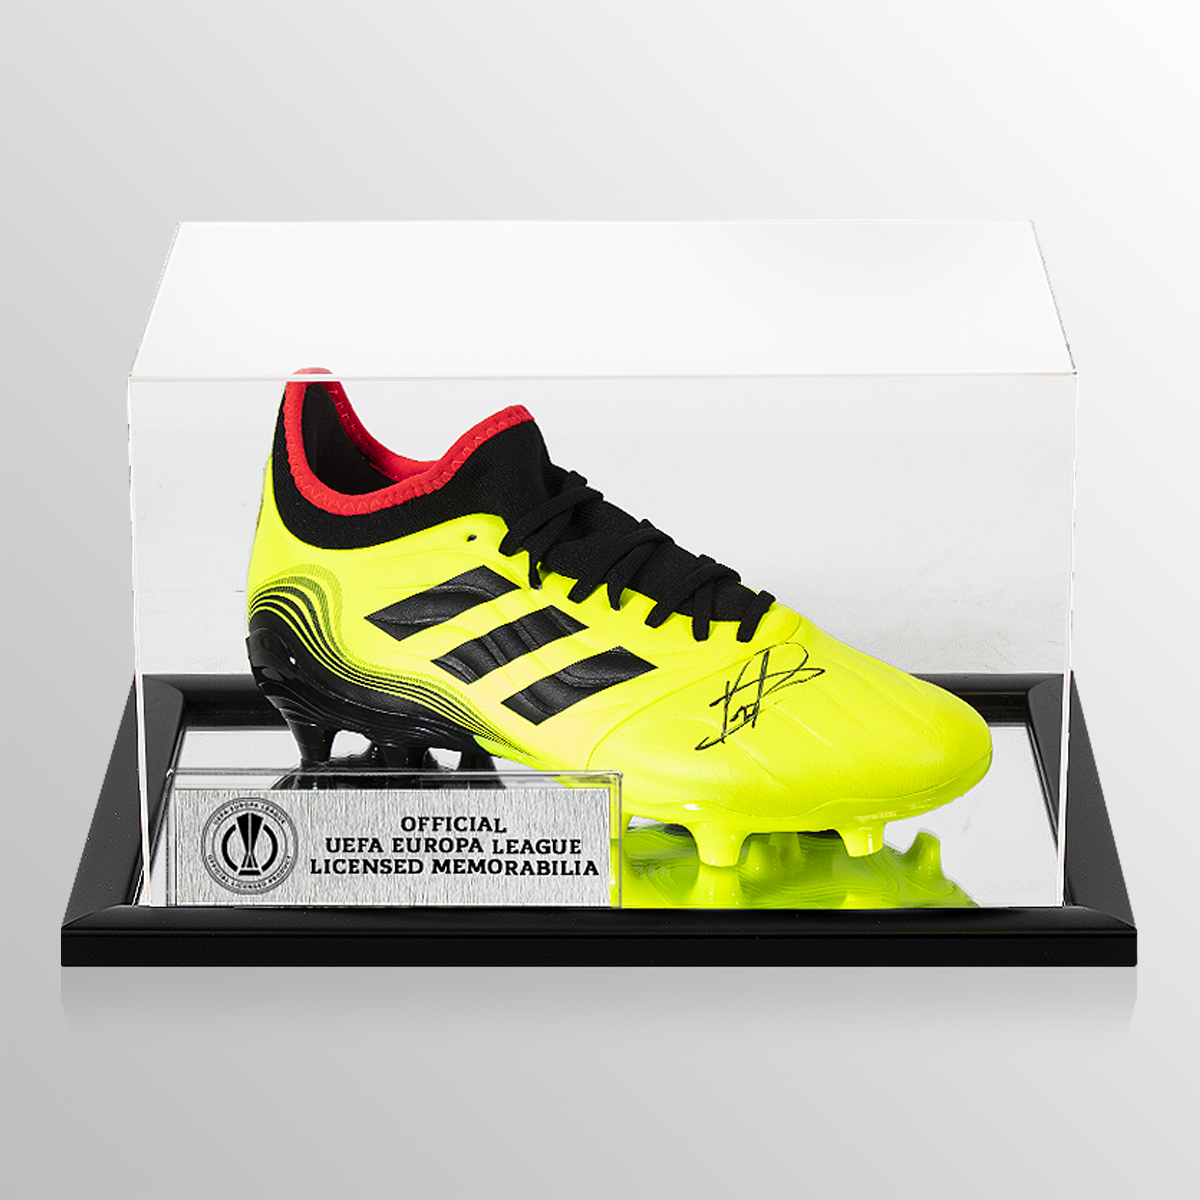 Pedri Stivale ufficiale Adidas Copa Sense .3 FG giallo autografato dalla UEFA Europa League in custodia acrilica